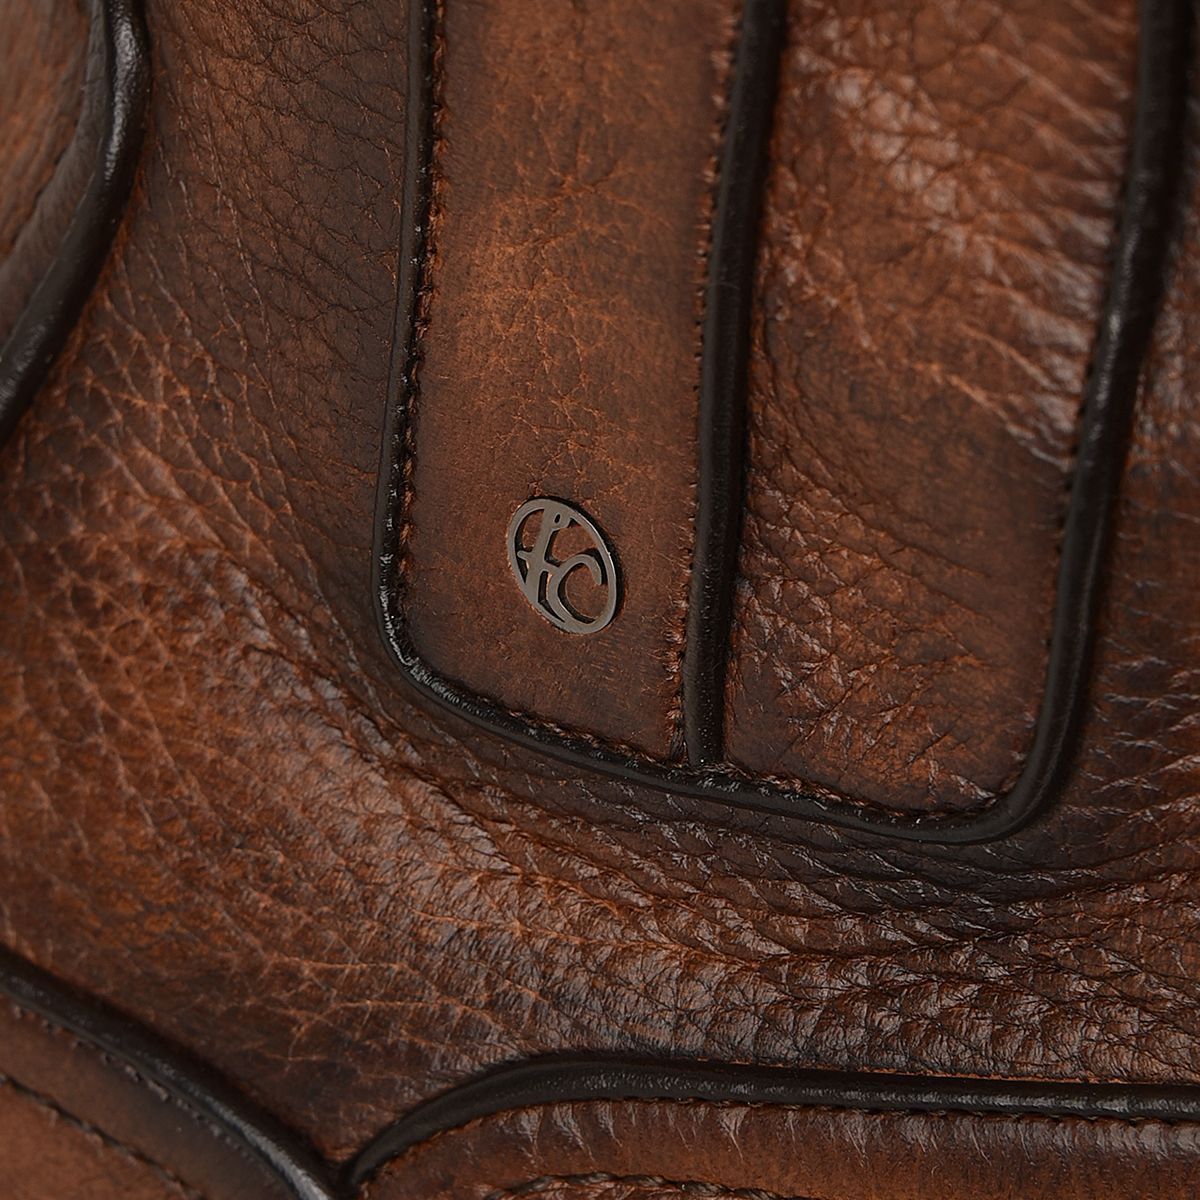 G93VNVN - Franco Cuadra brown dress casual deer leather ankle boots for men-Kuet.us